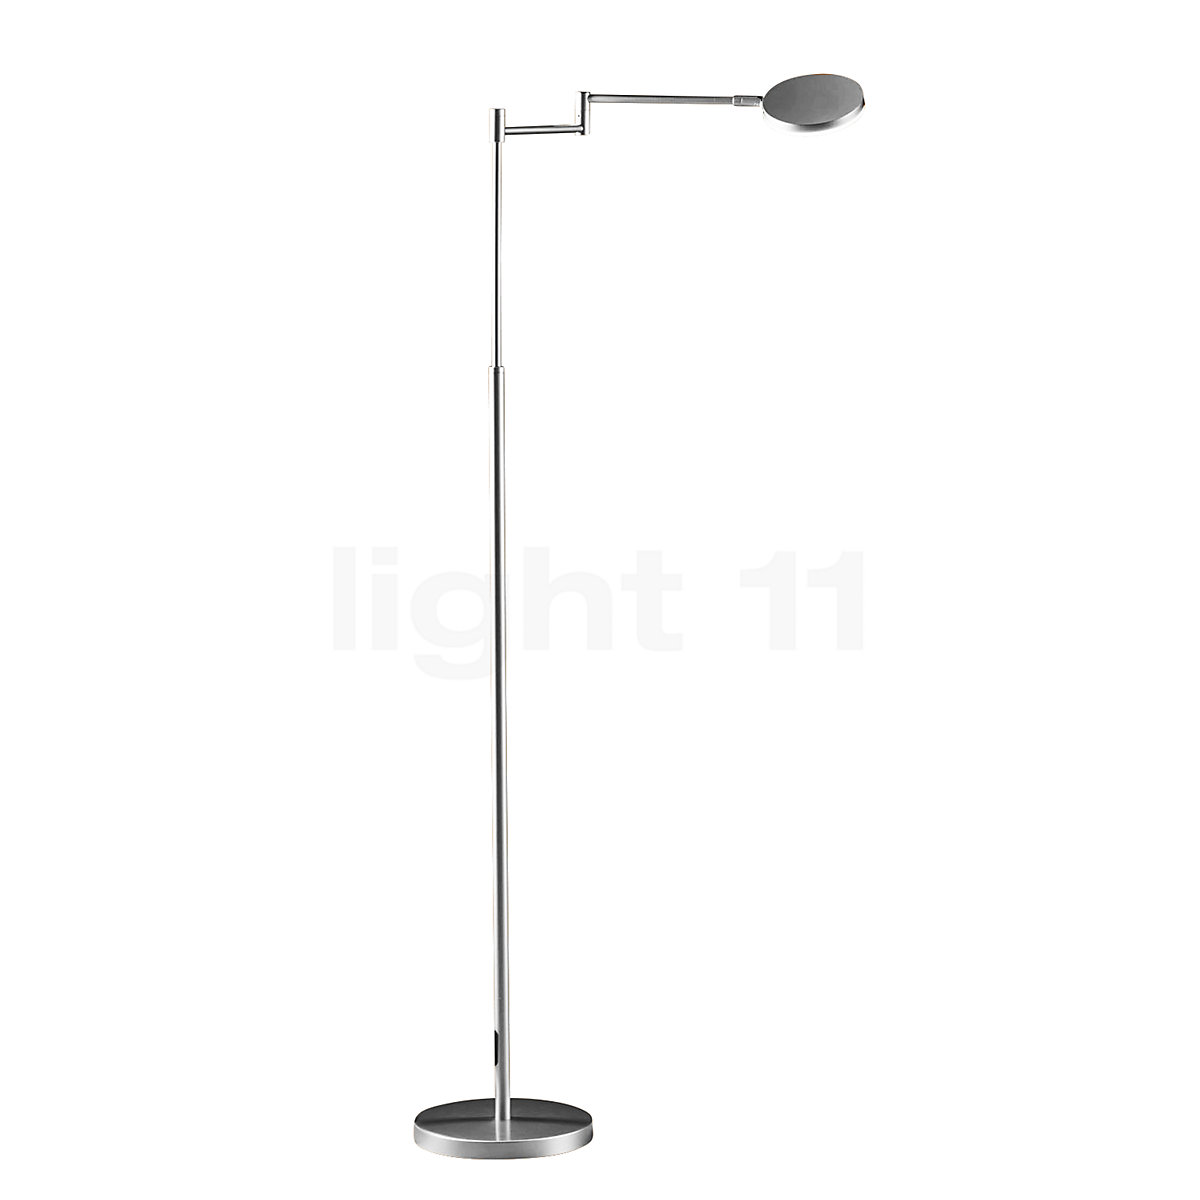 landheer dief Ontstaan Buy Holtkötter Plano B Floor Lamp LED at light11.eu